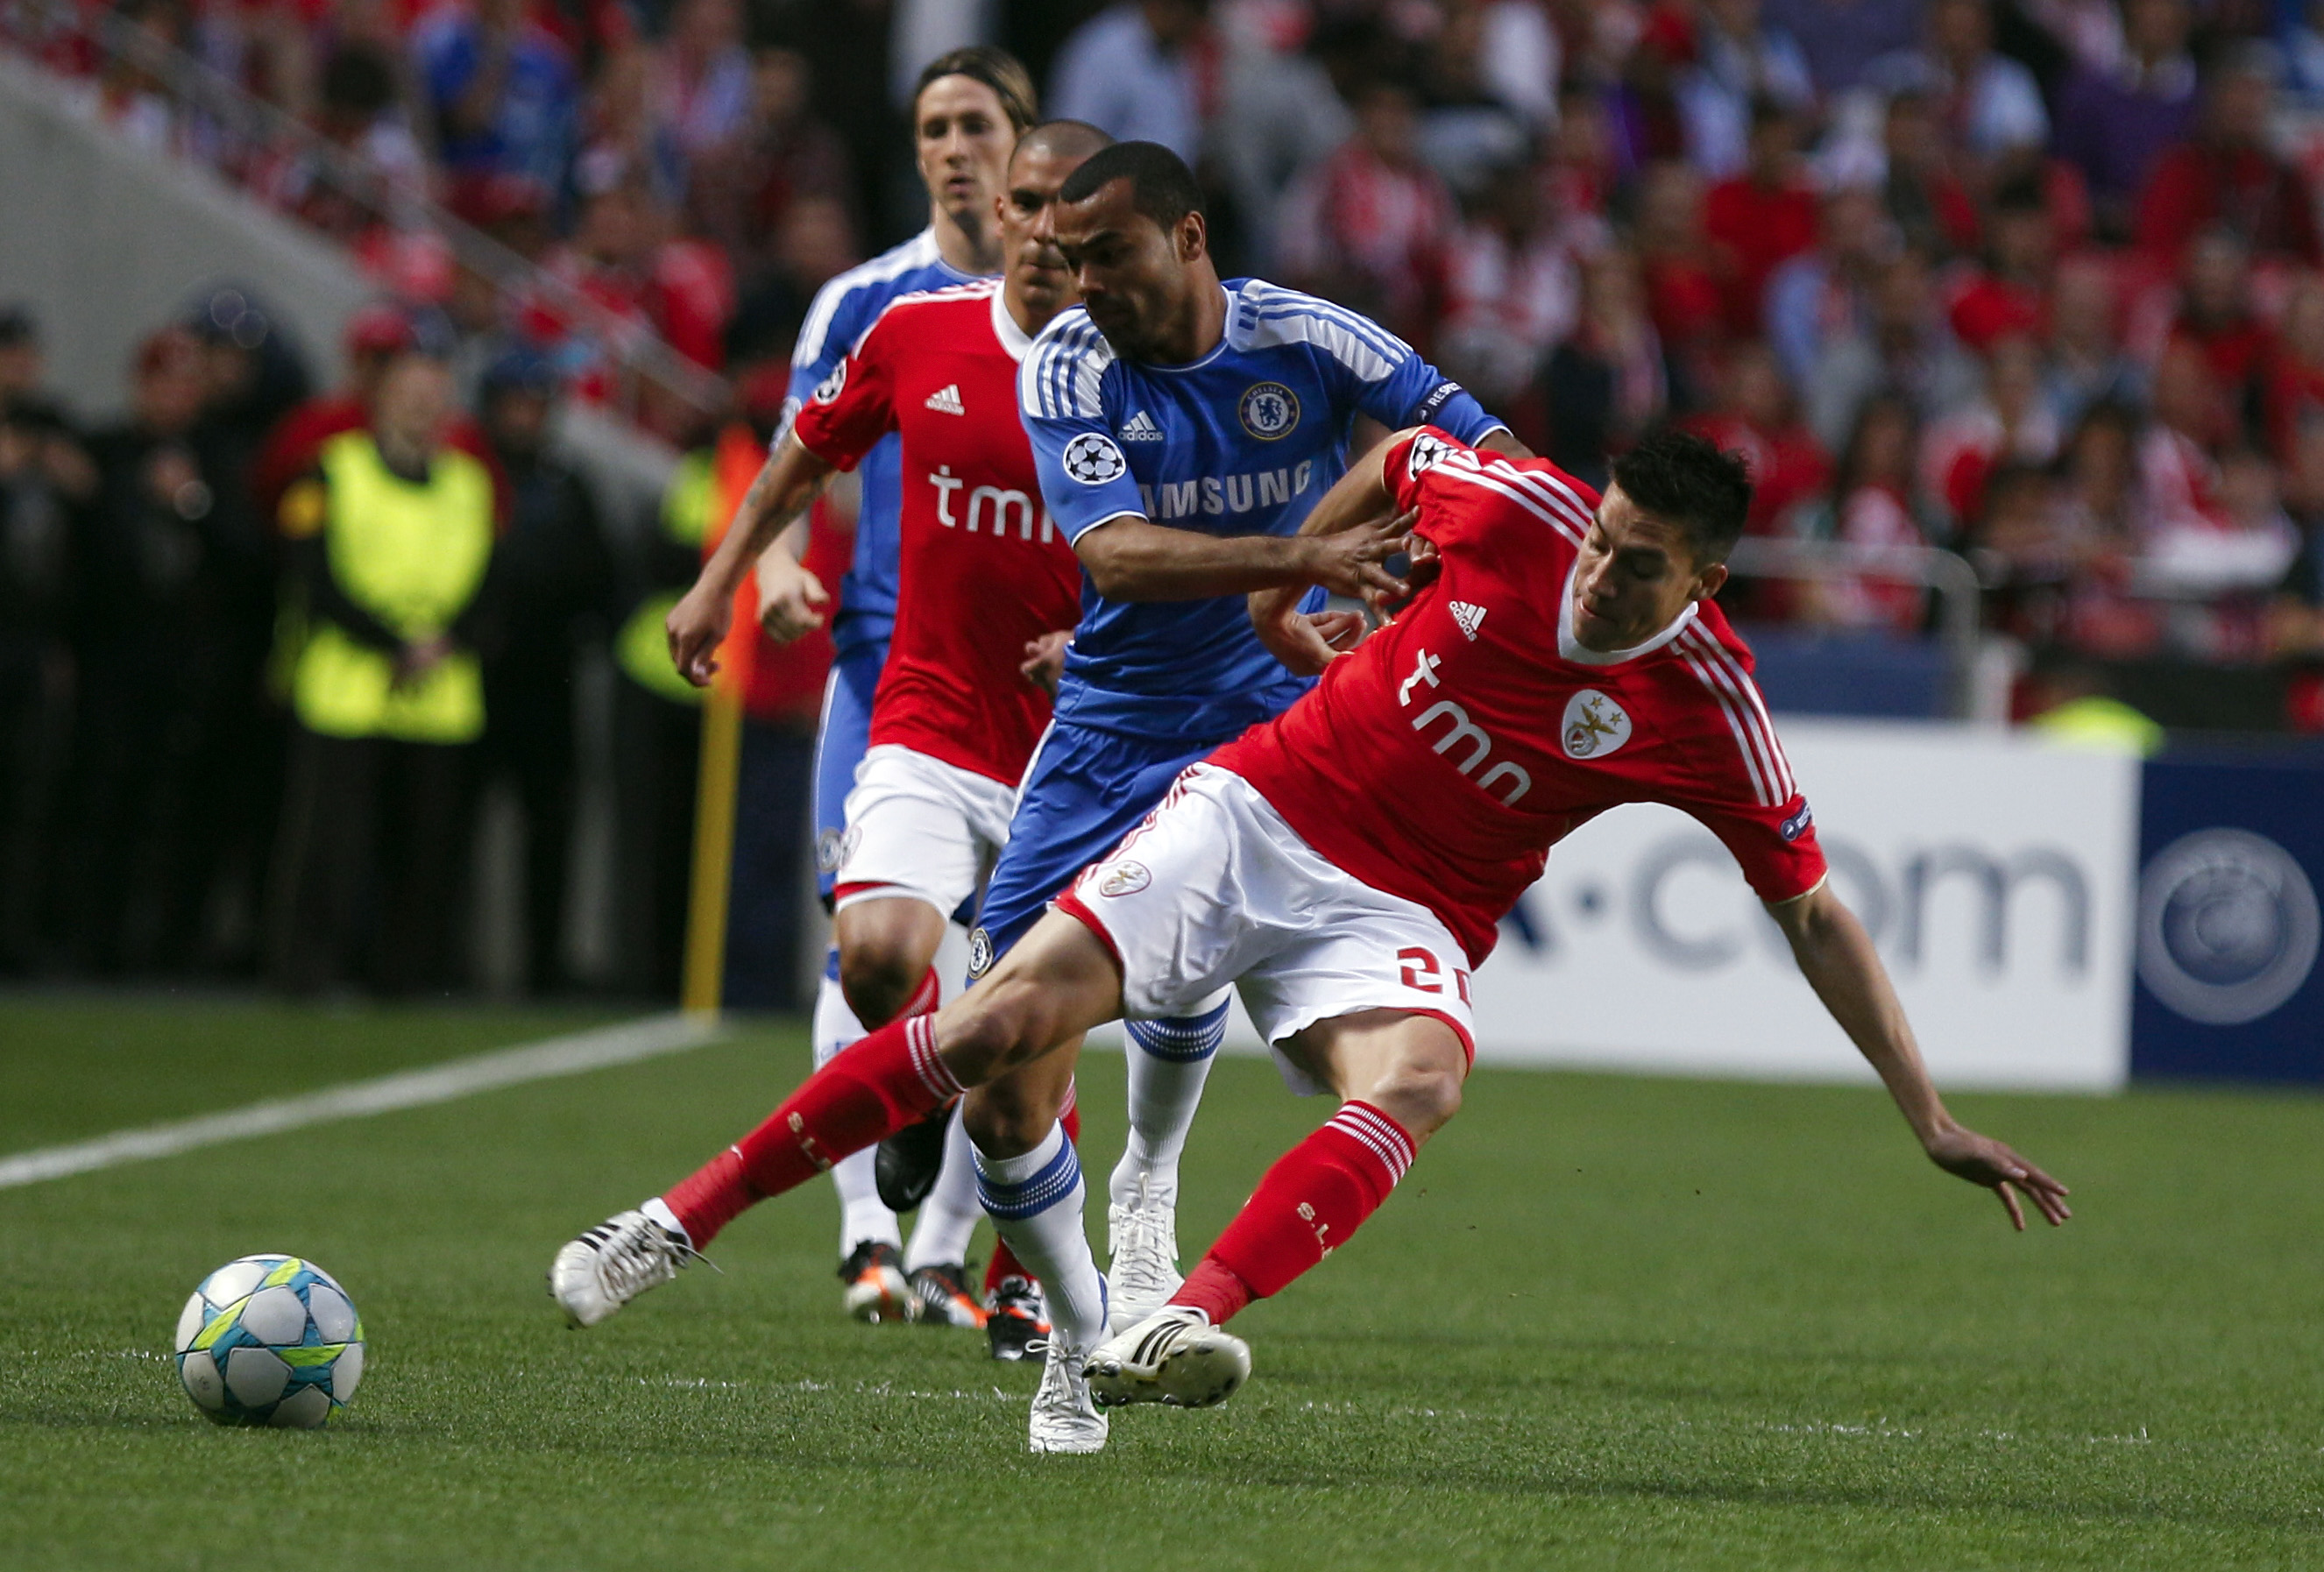 Ashley Cole var den starkare i den här situationen mot Nico Gaitan. Chelseas bortavinst mot Benfica ger britterna fördel inför returen på Stamford Bridge.